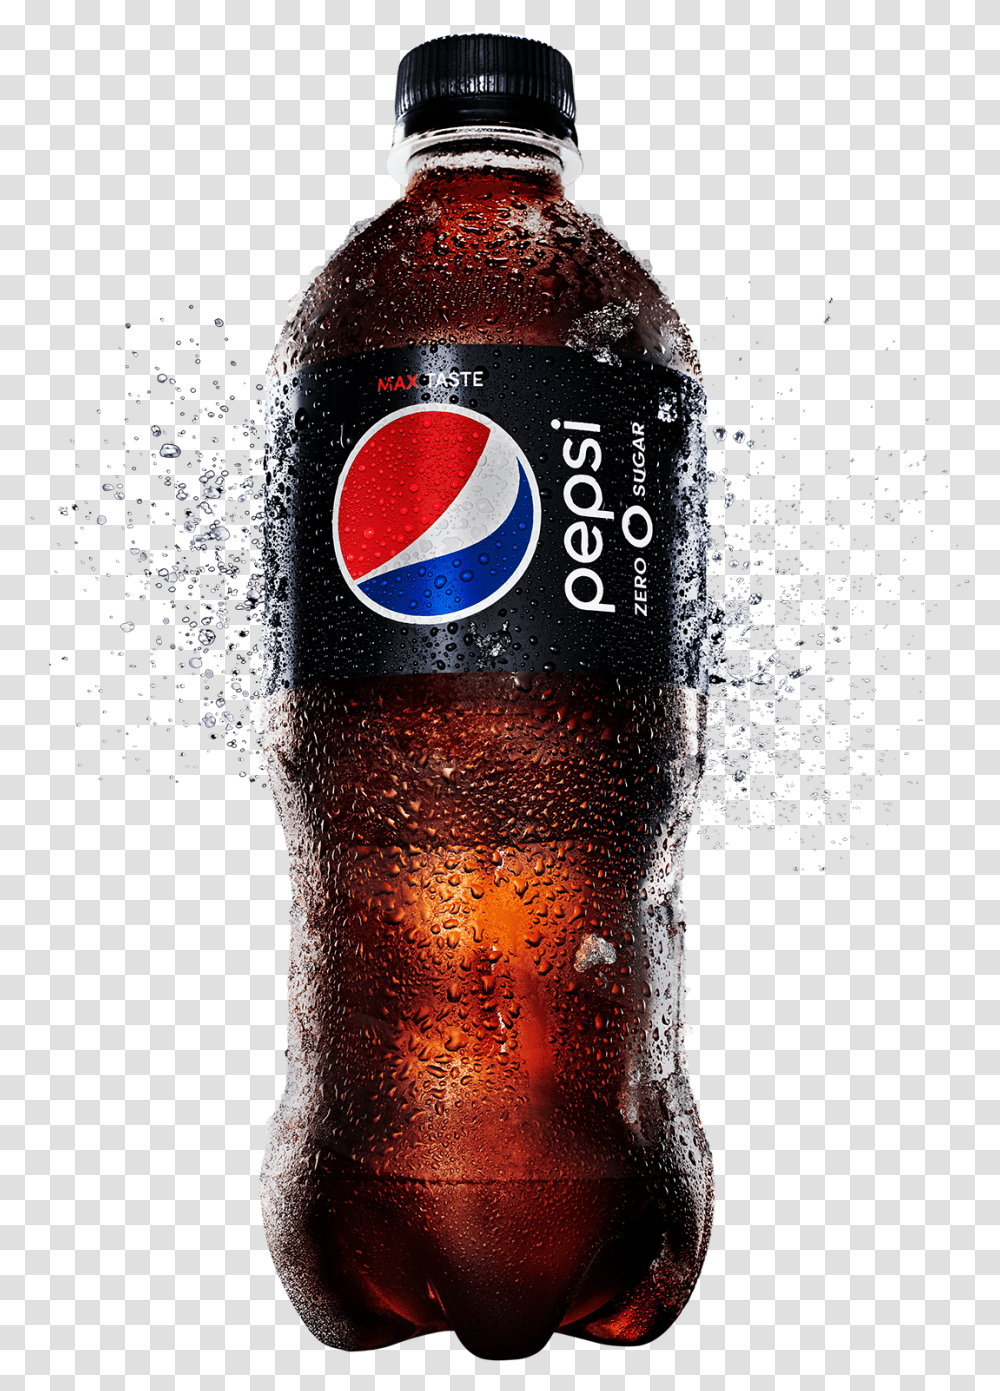 Bottle Of Pepsi, Soda, Beverage, Drink, Coke Transparent Png